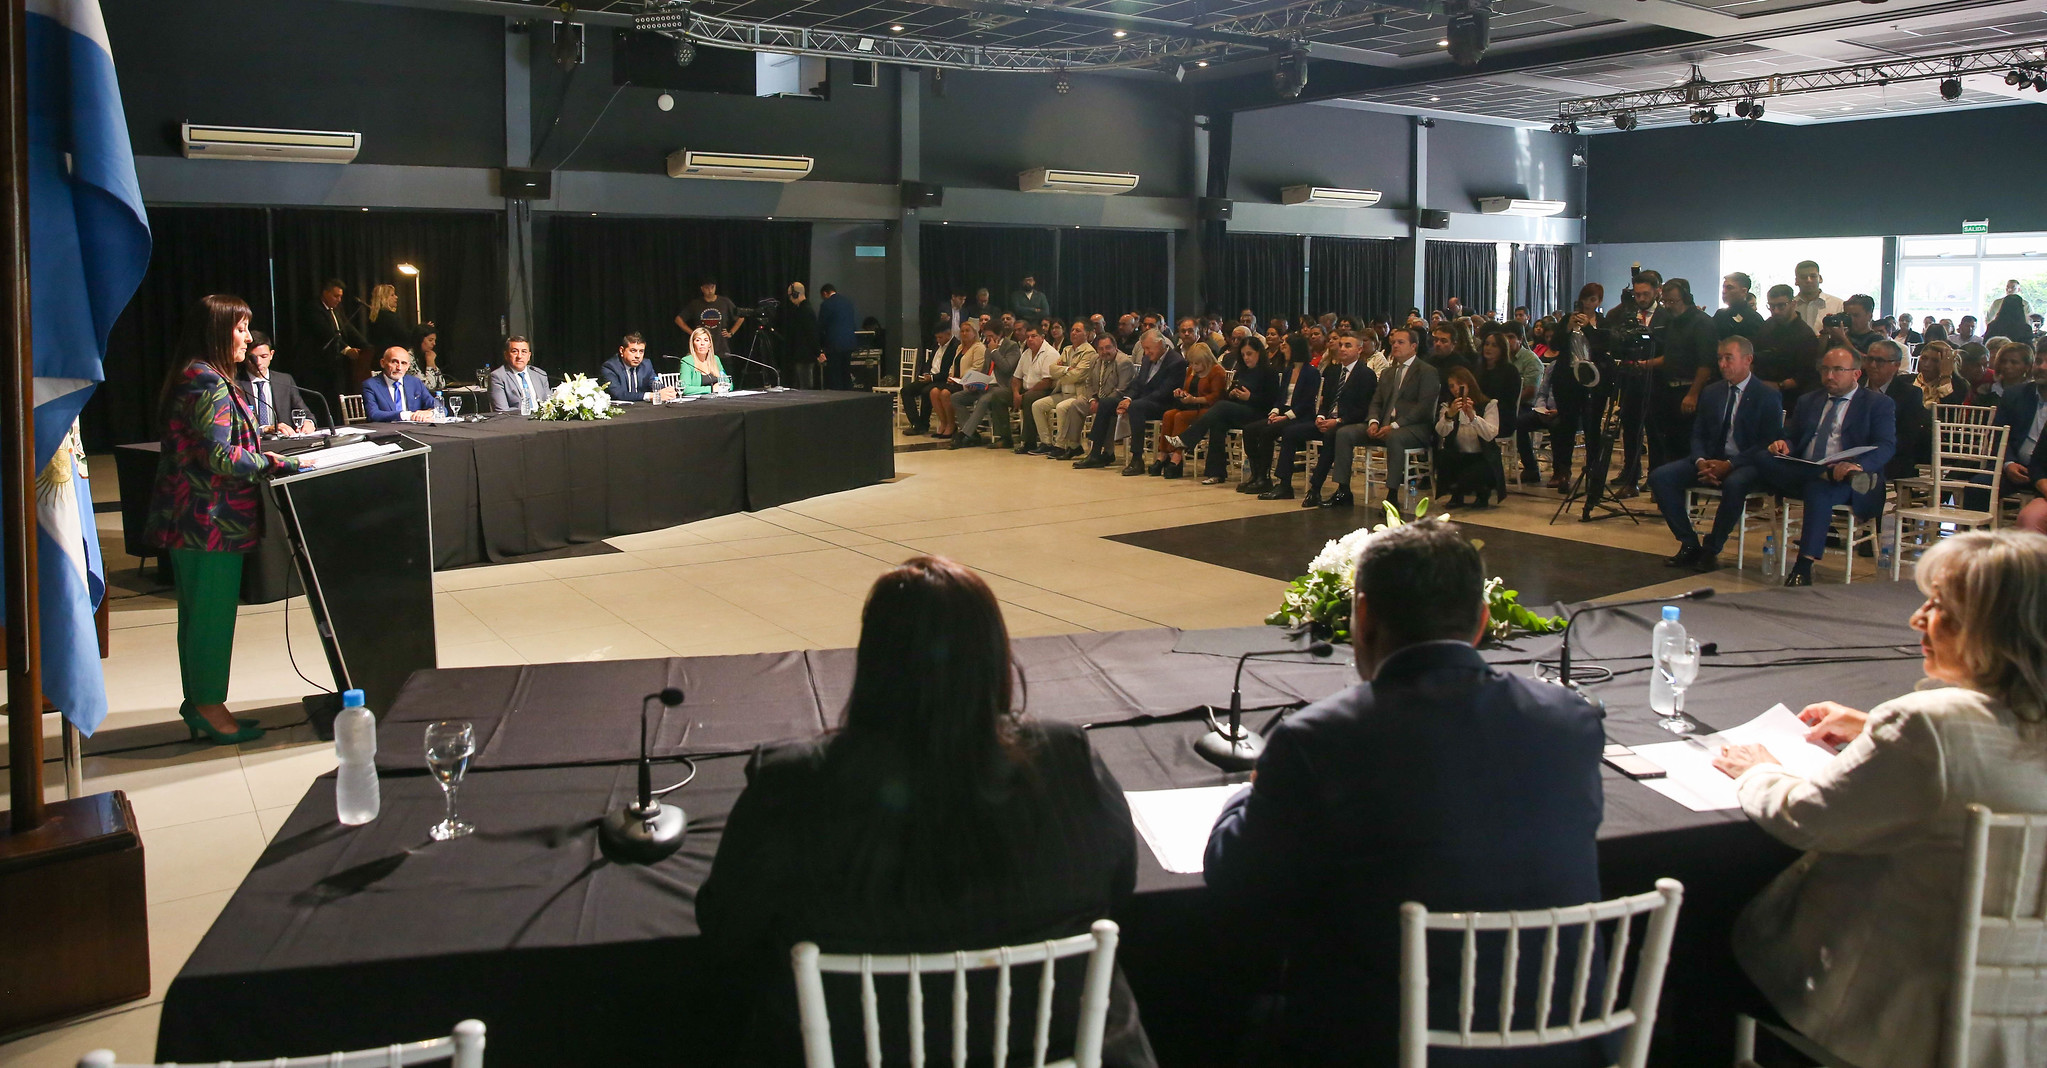  El vicegobernador Fabián Martín presente en la Apertura de Sesiones en Chimbas